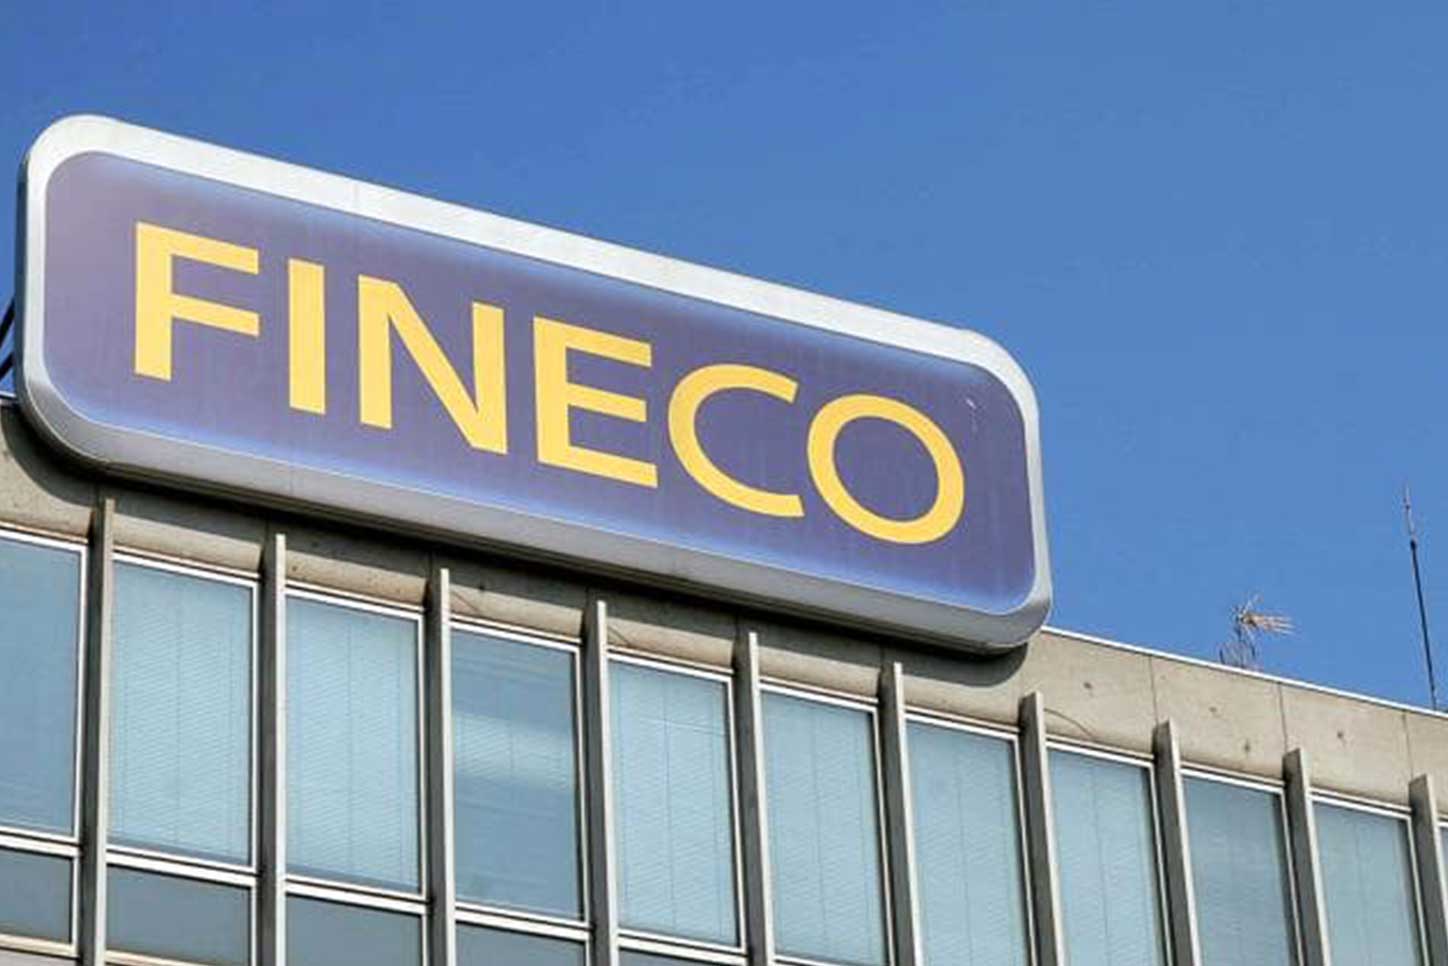 financialounge -  Alessandro Foti banche italiane Fineco Finecobank